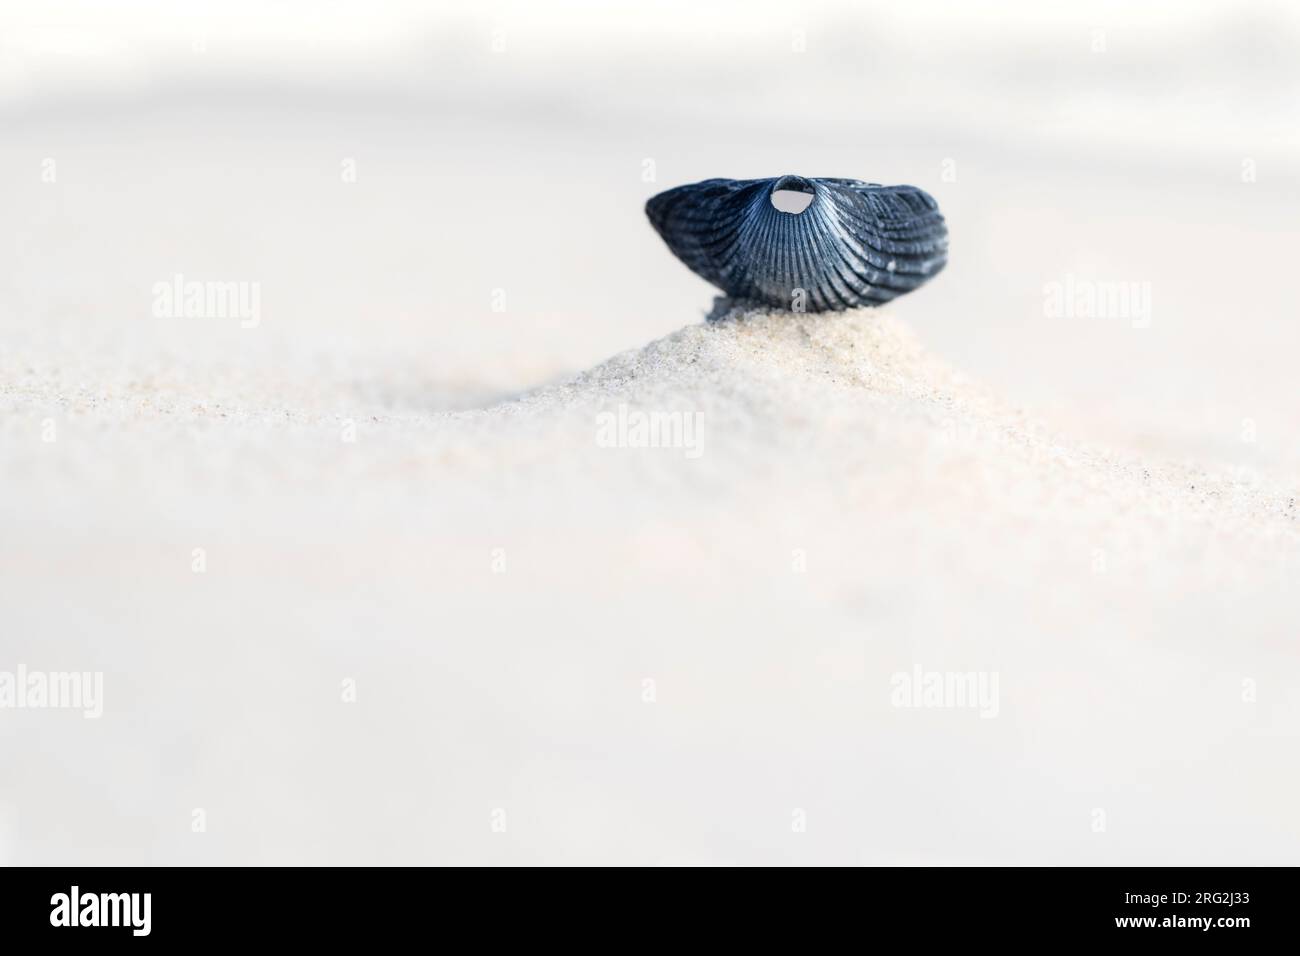 Coquille vide d'un Cockle commun (Cerastoderma edule) sur la plage de l'île de Wadden Texel aux pays-Bas. Banque D'Images